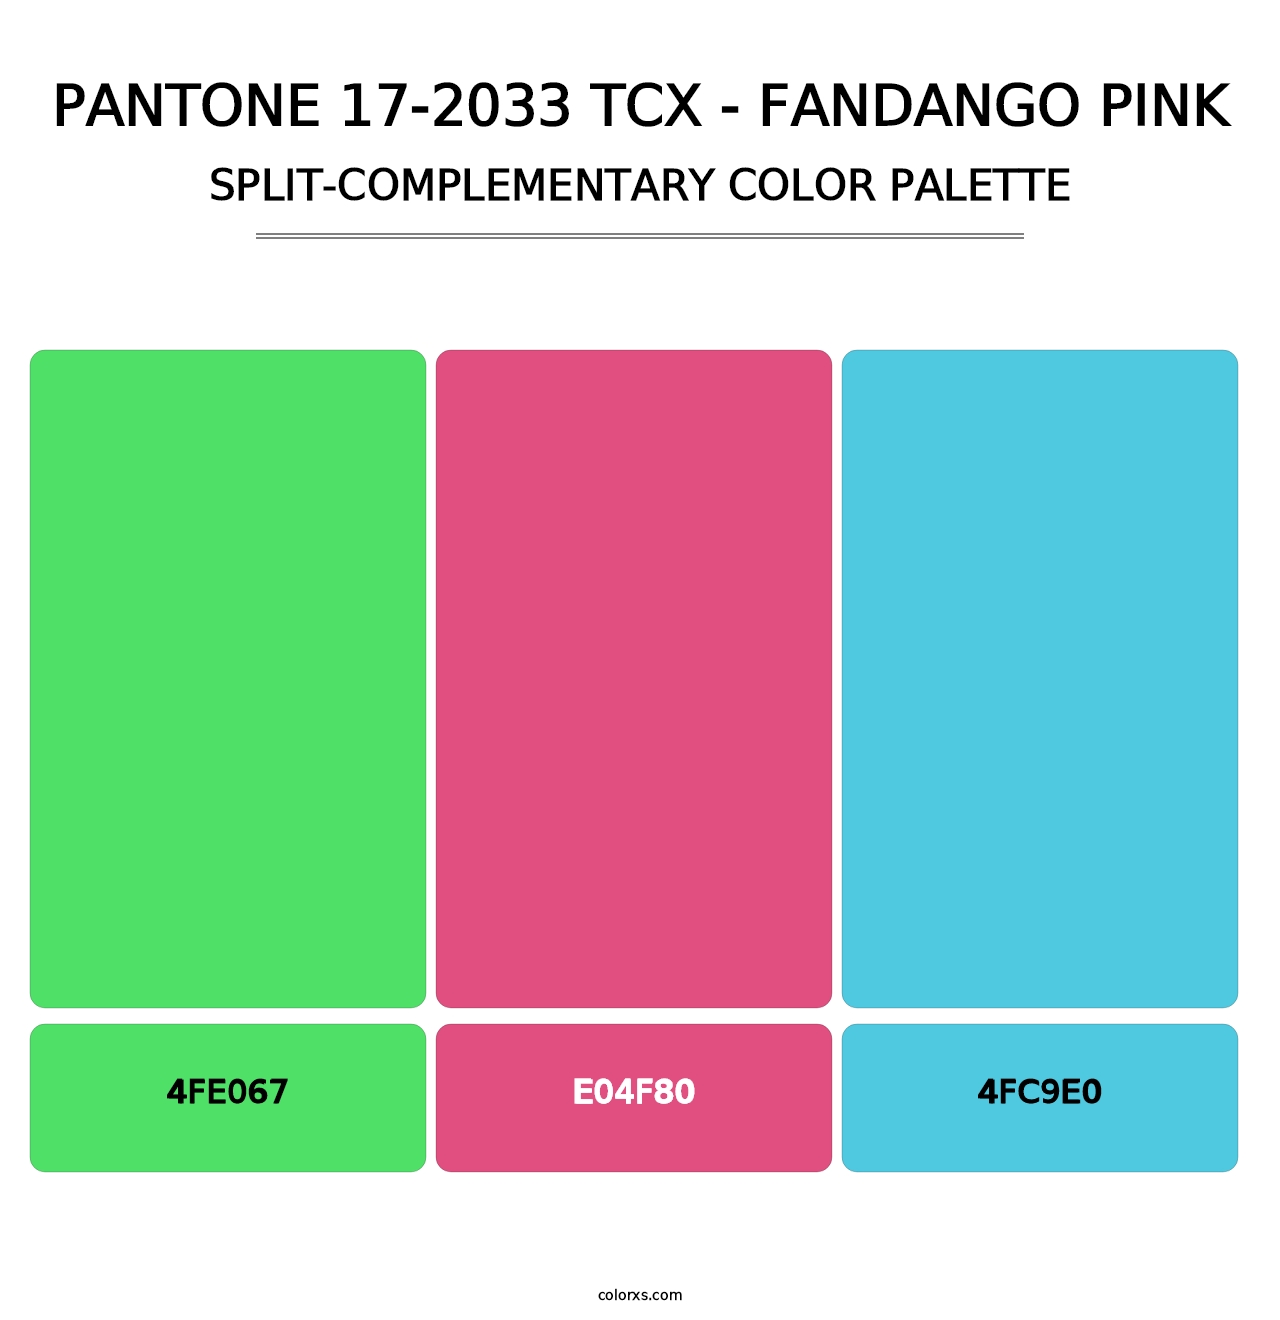 PANTONE 17-2033 TCX - Fandango Pink - Split-Complementary Color Palette